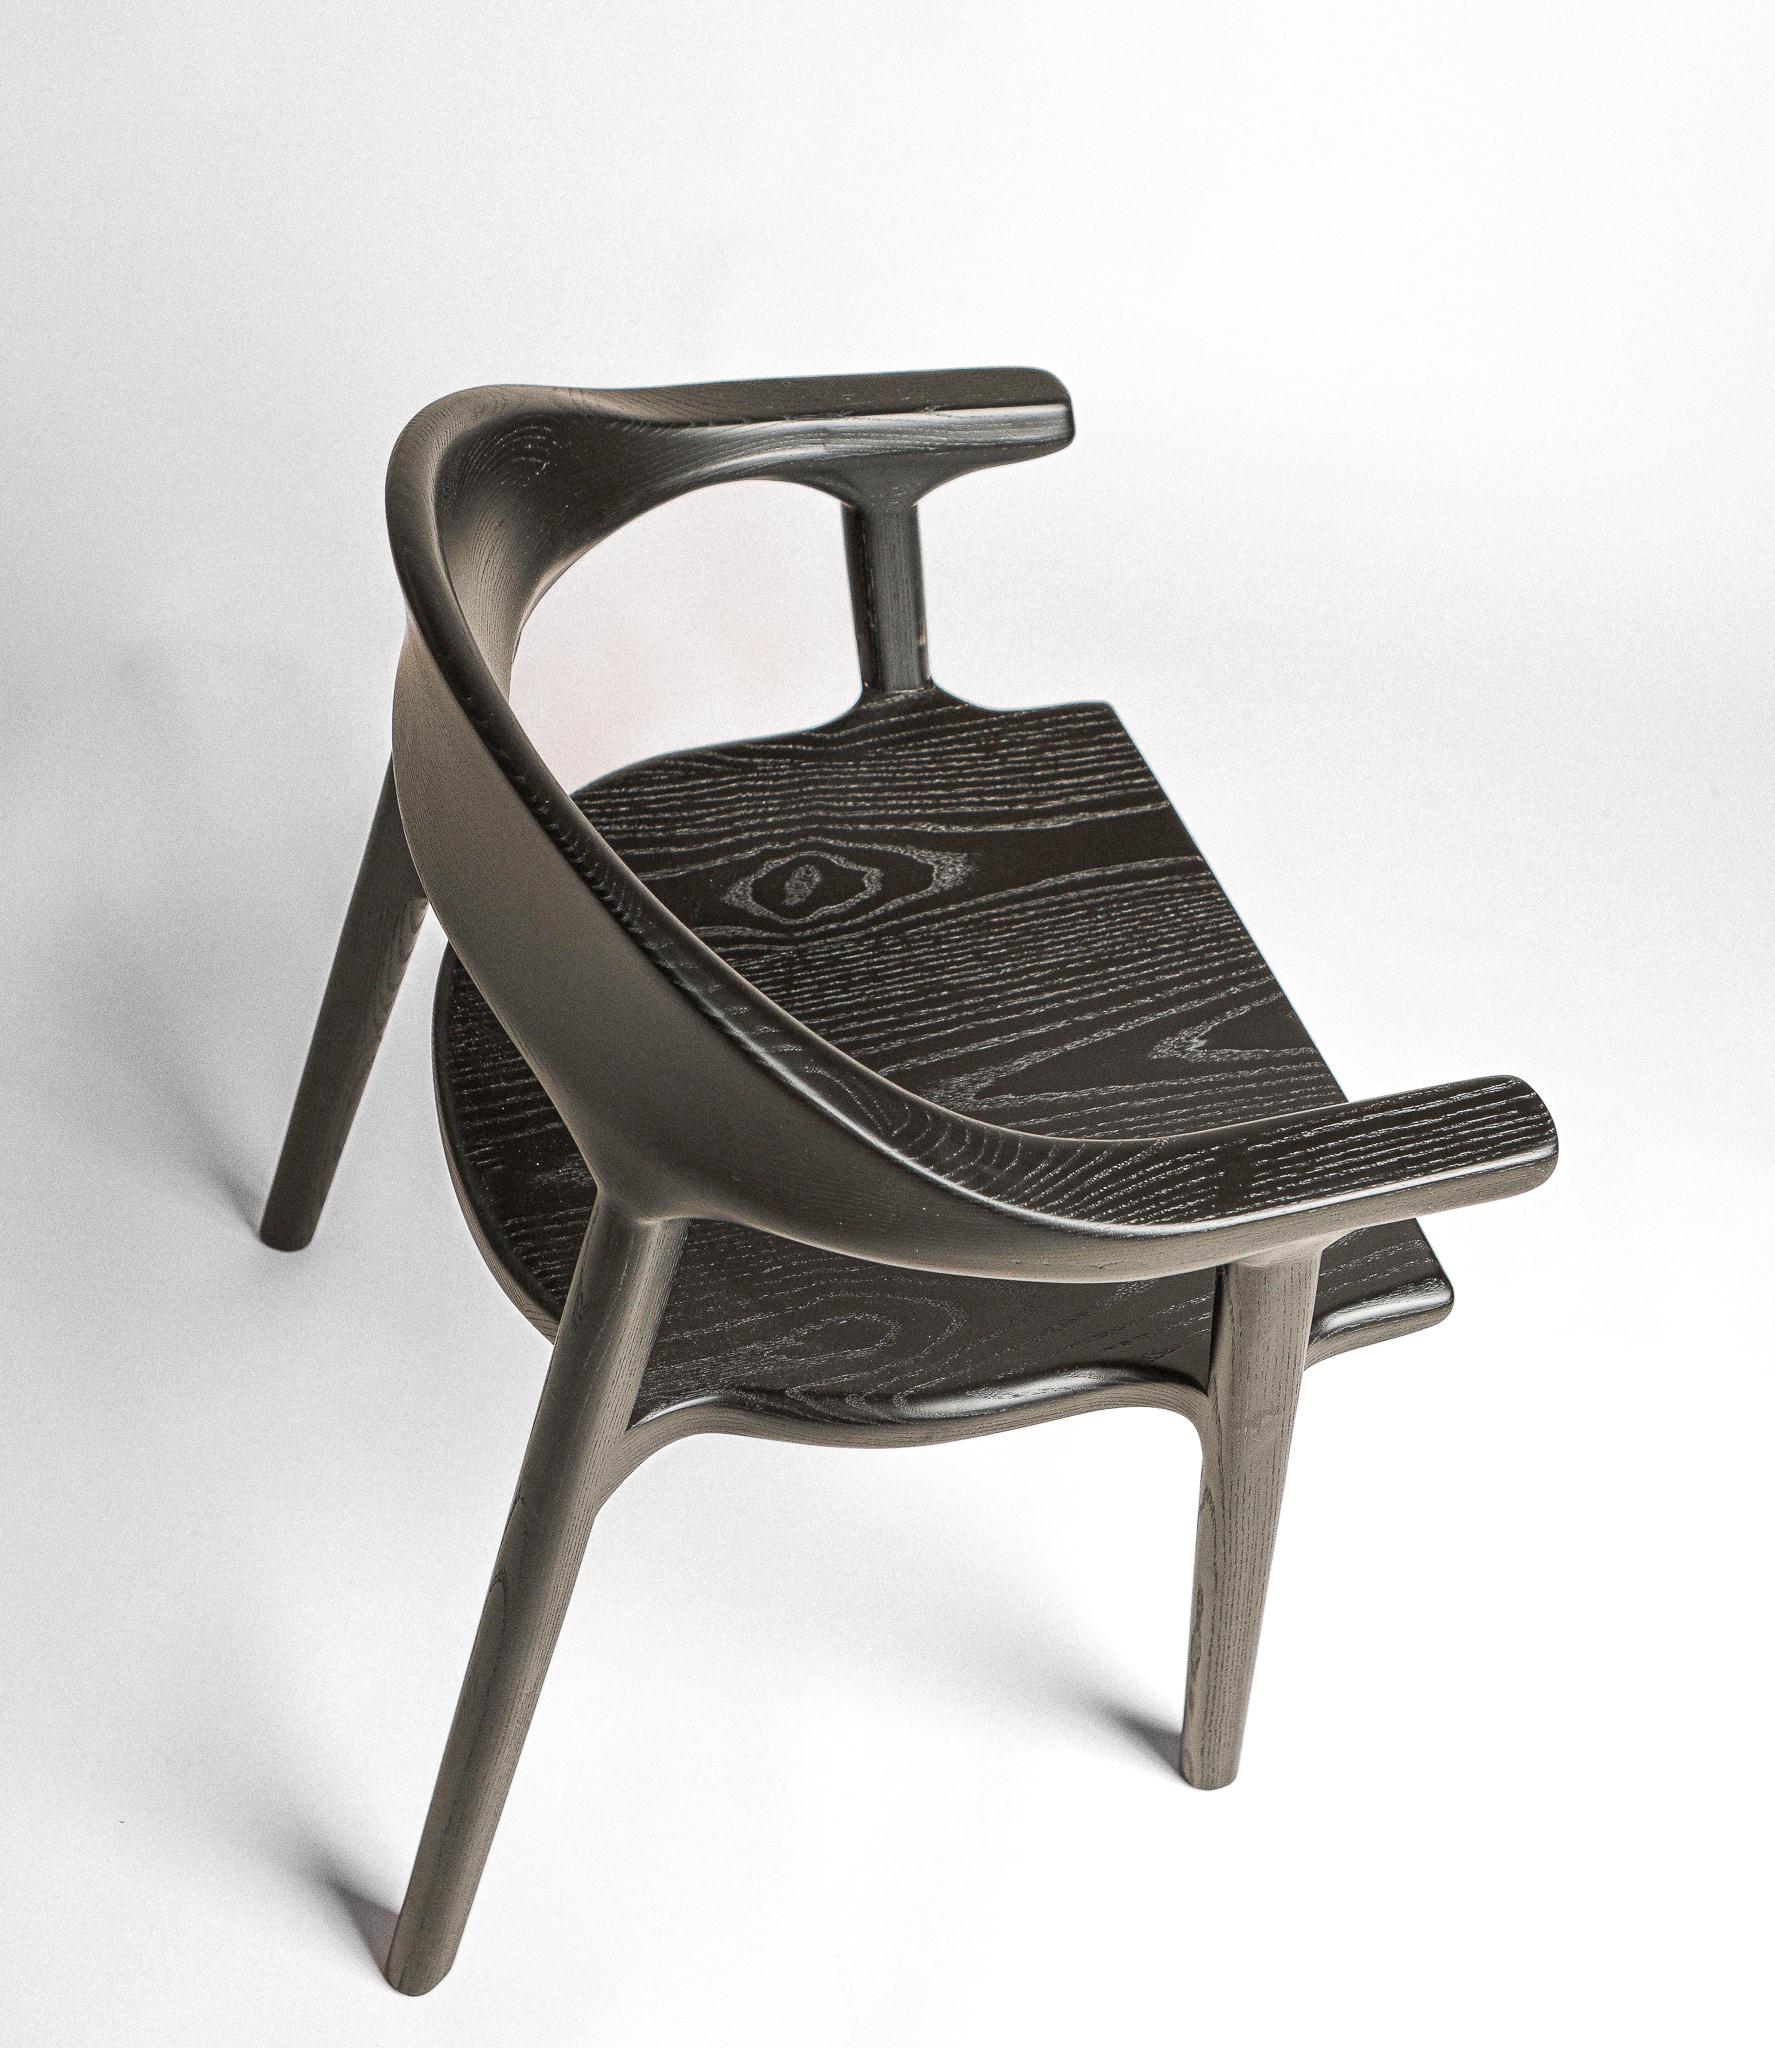 La chaise Karve, en bois massif, présente des courbes douces et un dossier profilé qui expriment le confort et le savoir-faire. La finition noircie accentue le grain du frêne, beau sous tous les angles.

Les chaises sont construites sur commande,